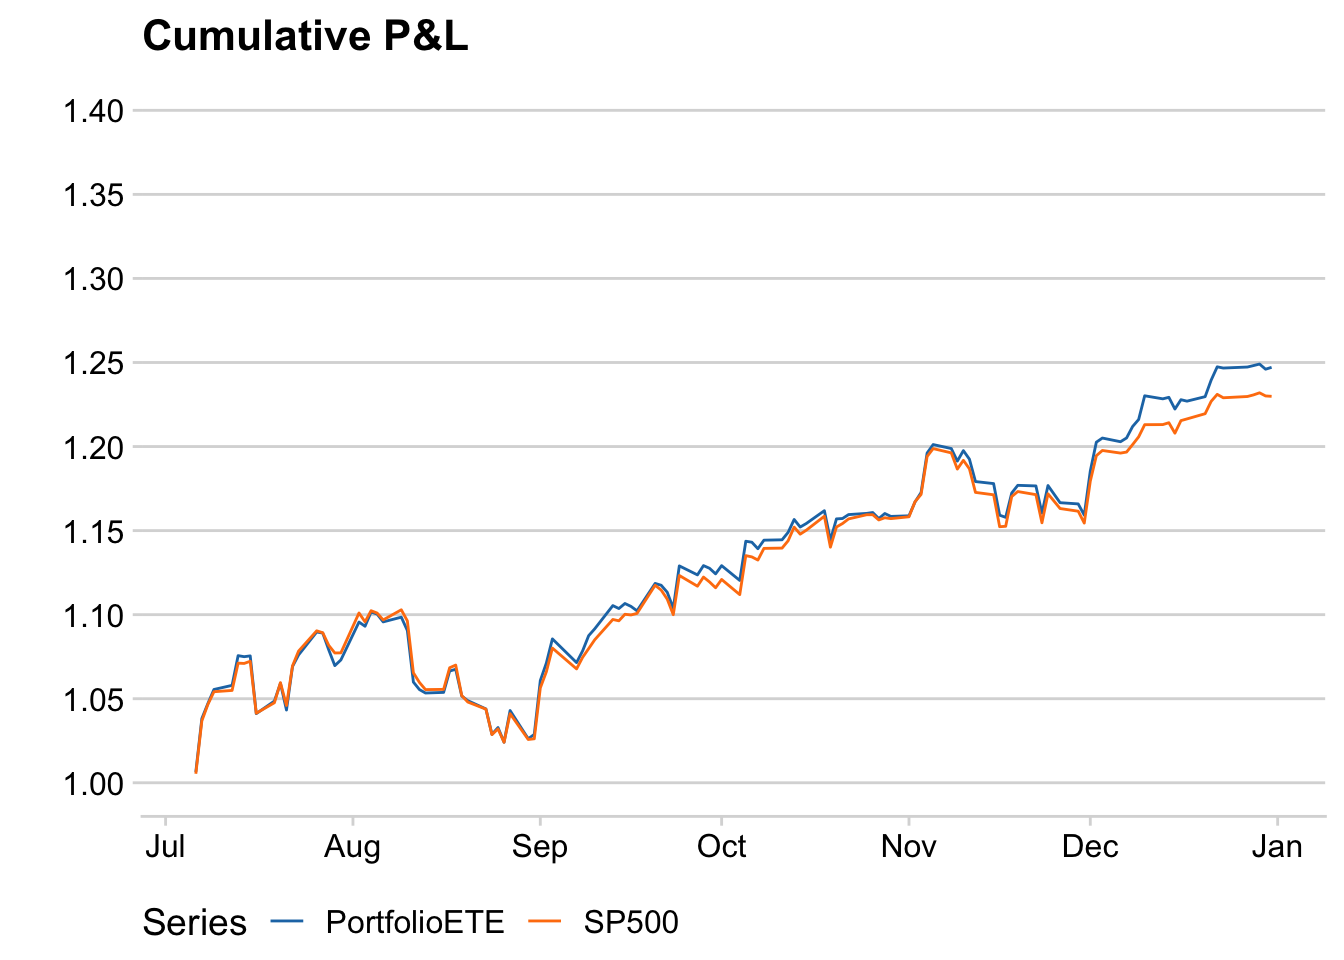 ETE portfolio and SP500 cumulative P&L.